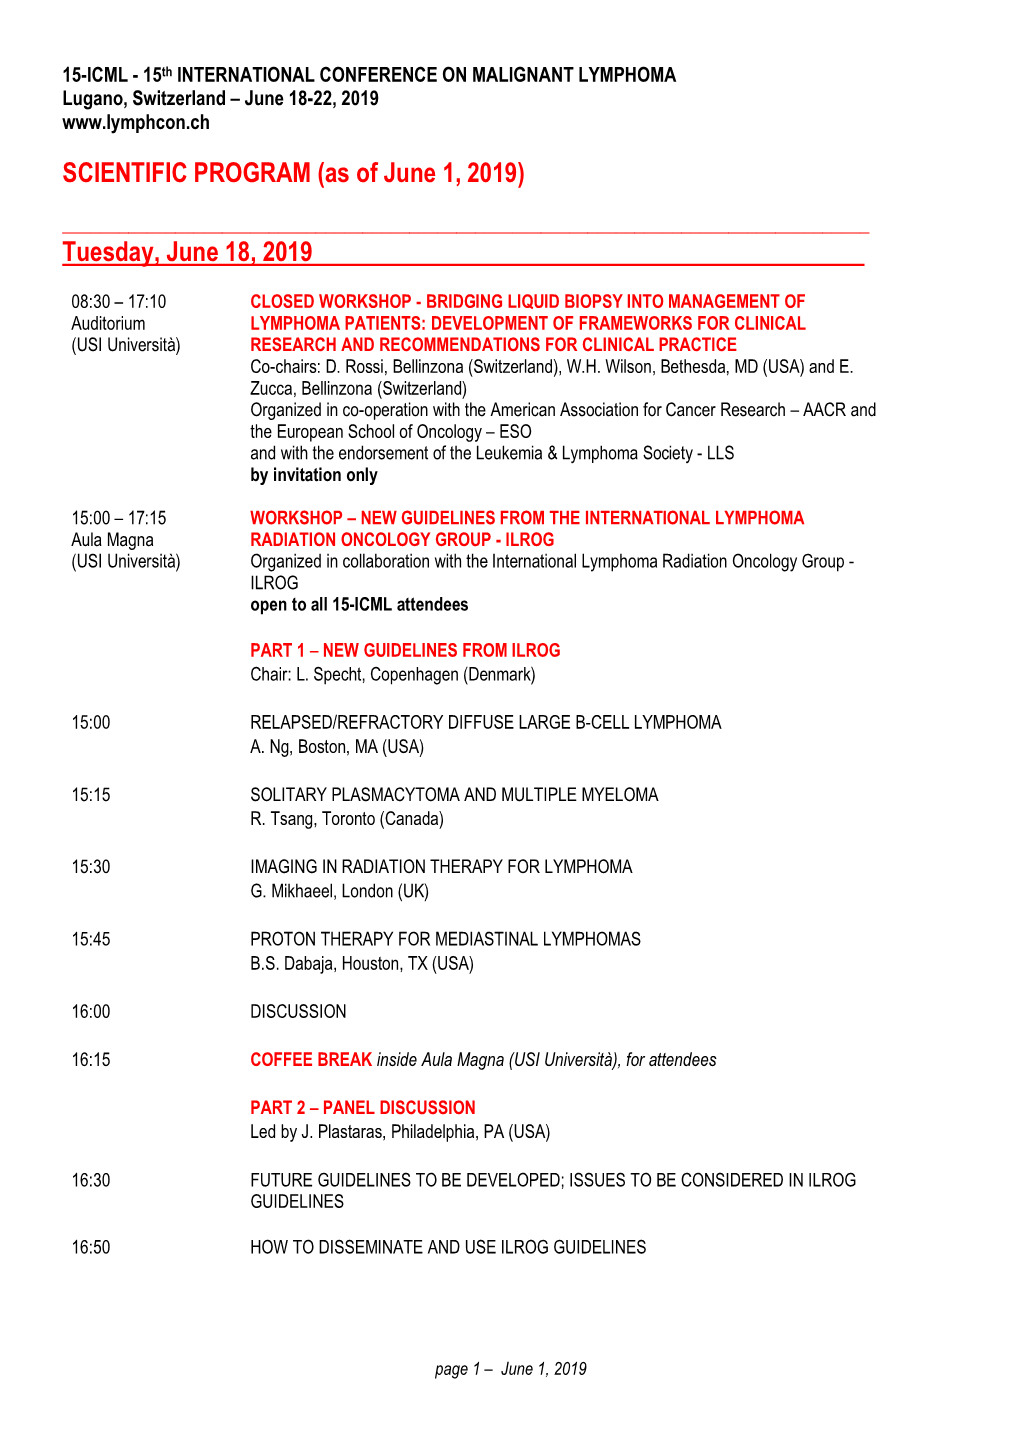 15-ICML Scientificprogram June 1